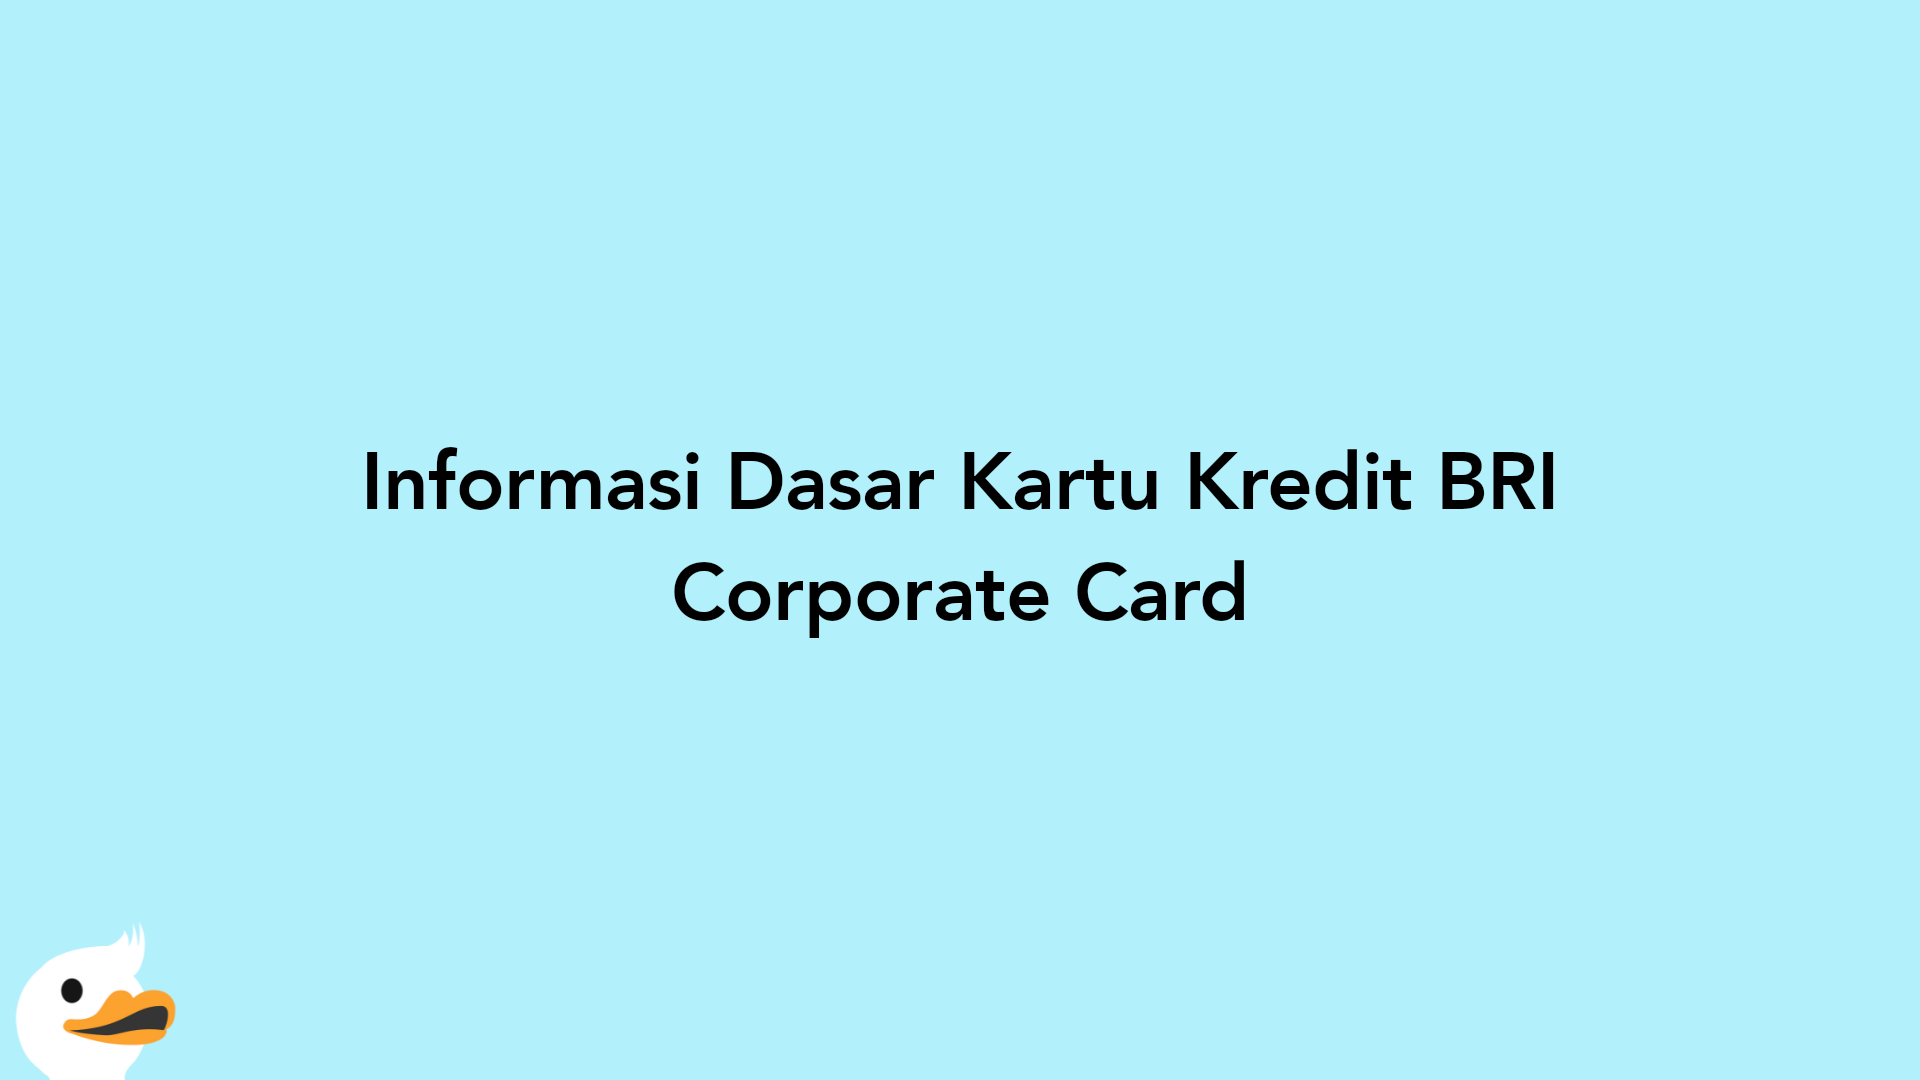 Informasi Dasar Kartu Kredit BRI Corporate Card